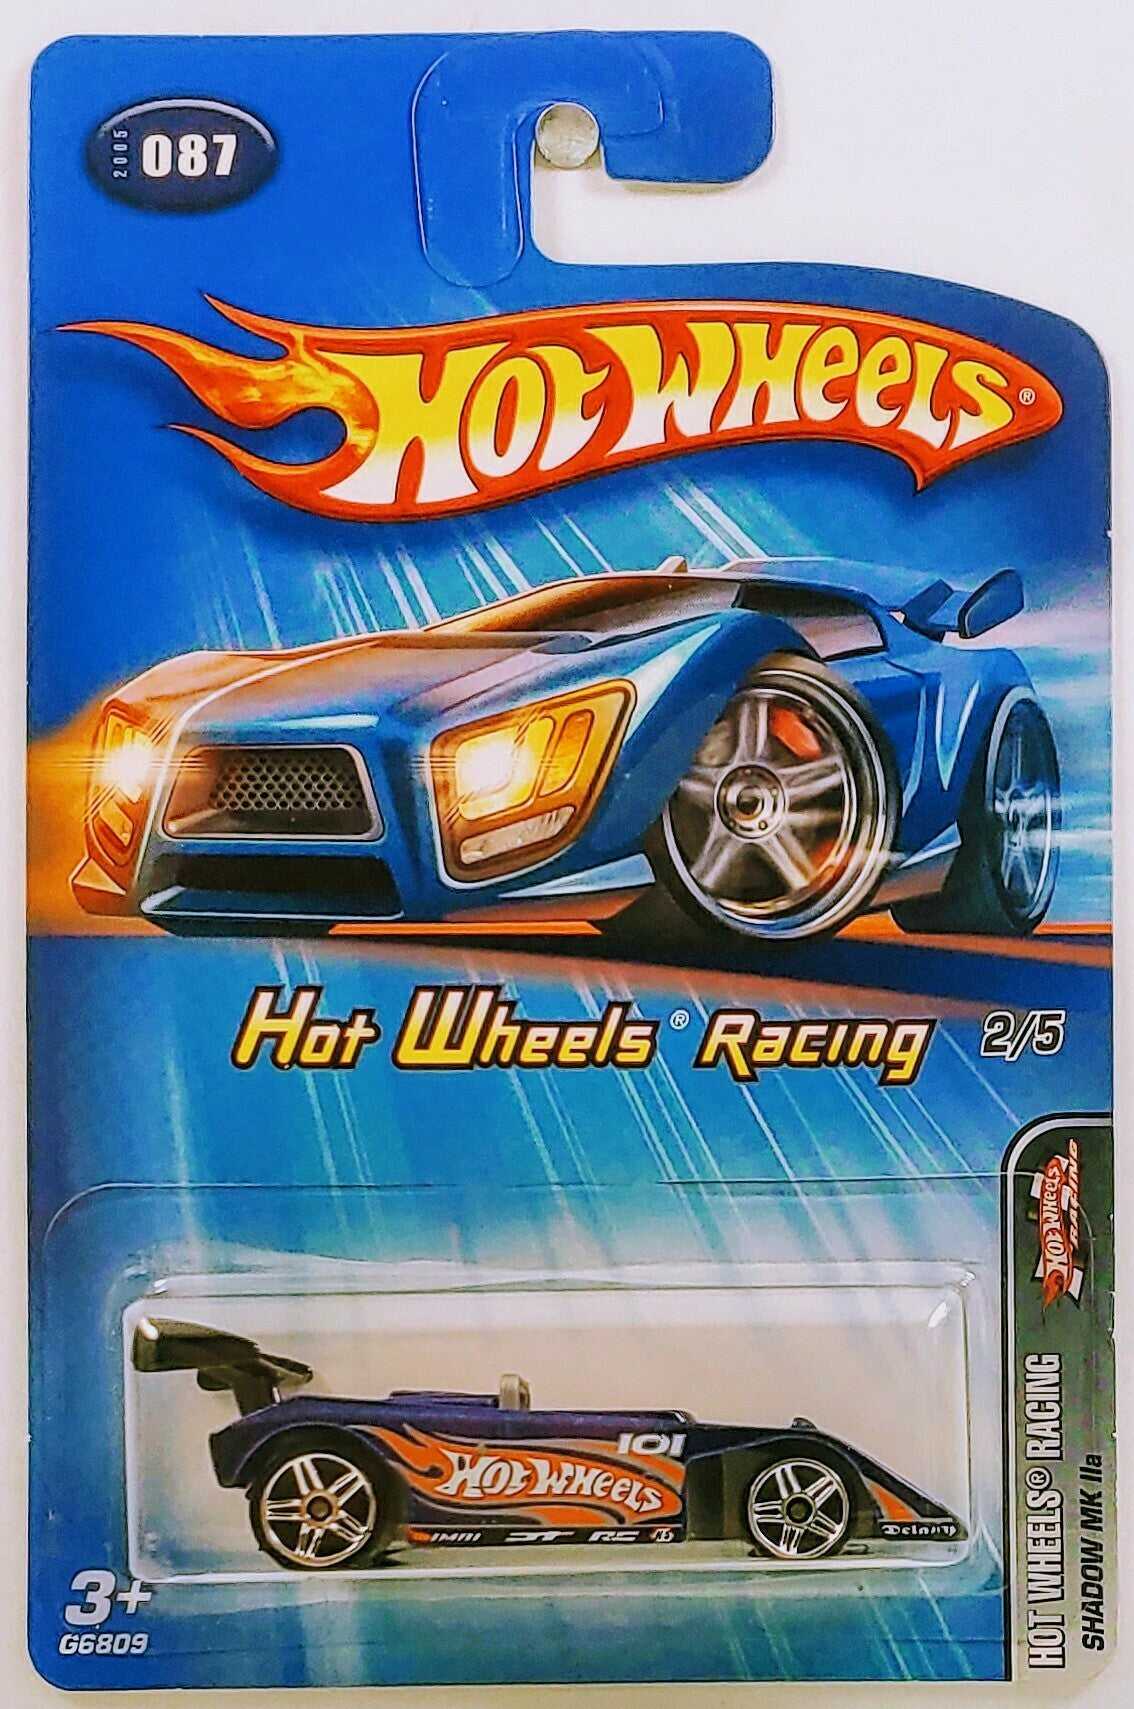 Hot Wheels 2005 - Collector # 087/183 - Hot Wheels Racing 2/5 - Shadow MK IIa - Blue - PR5 Wheels - USA Card